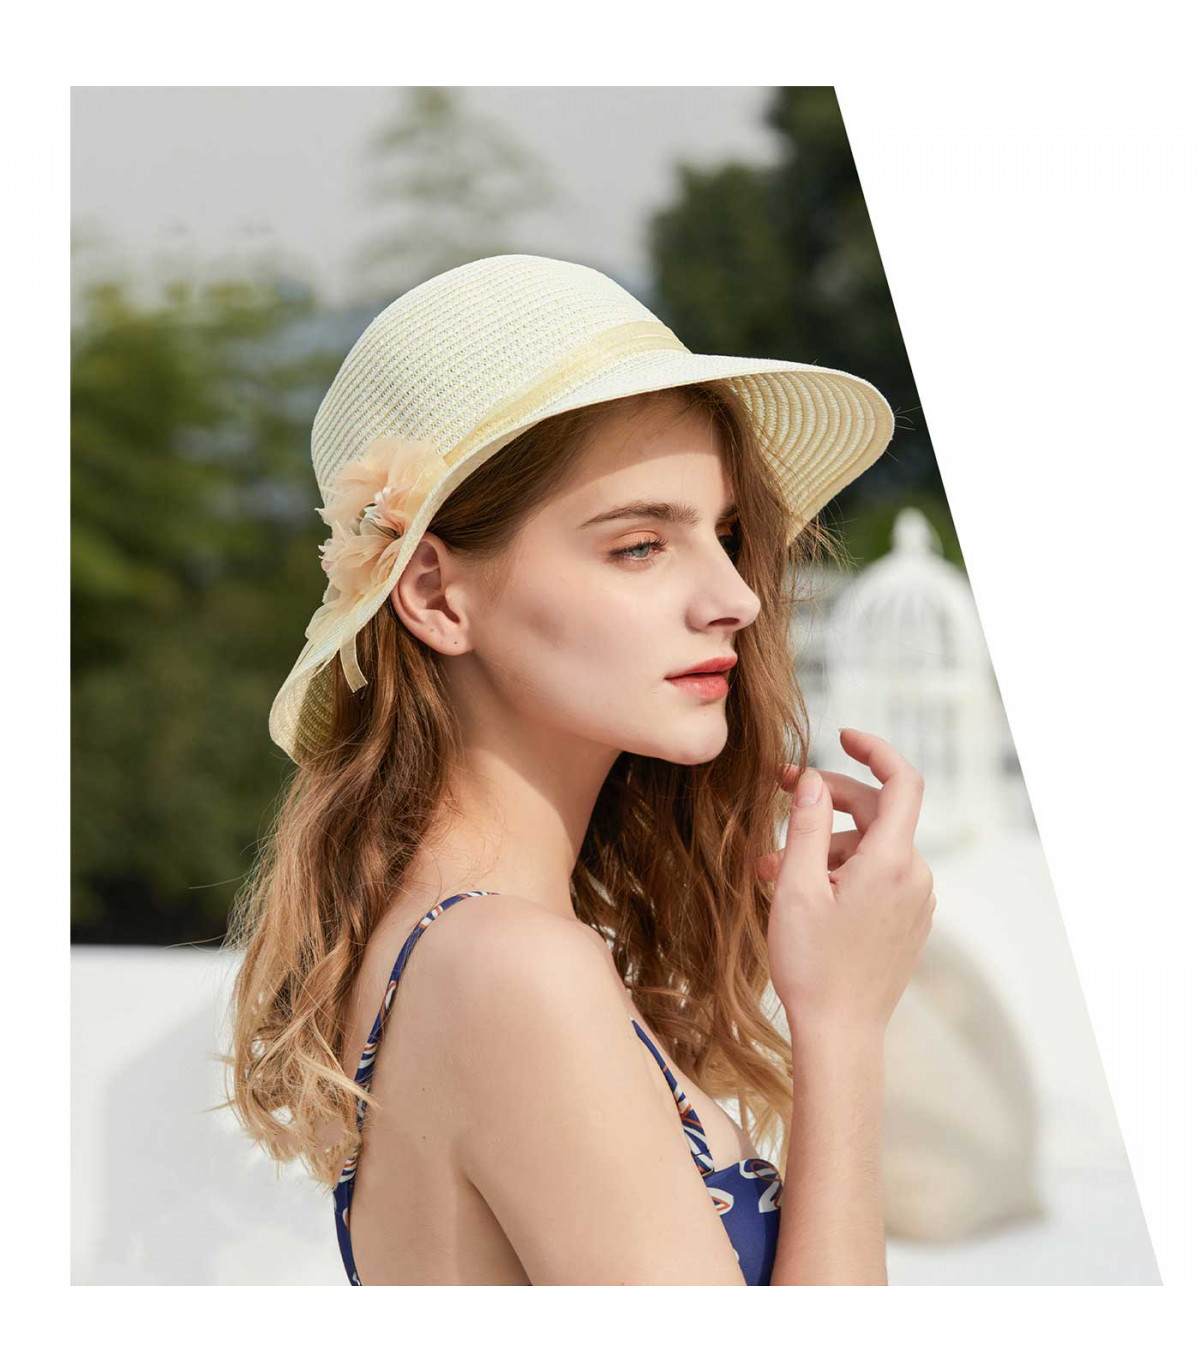 Tradineur - Sombrero mujer con flor, paja flexible, ala ancha y goma protección solar, playa, piscina, aire libr